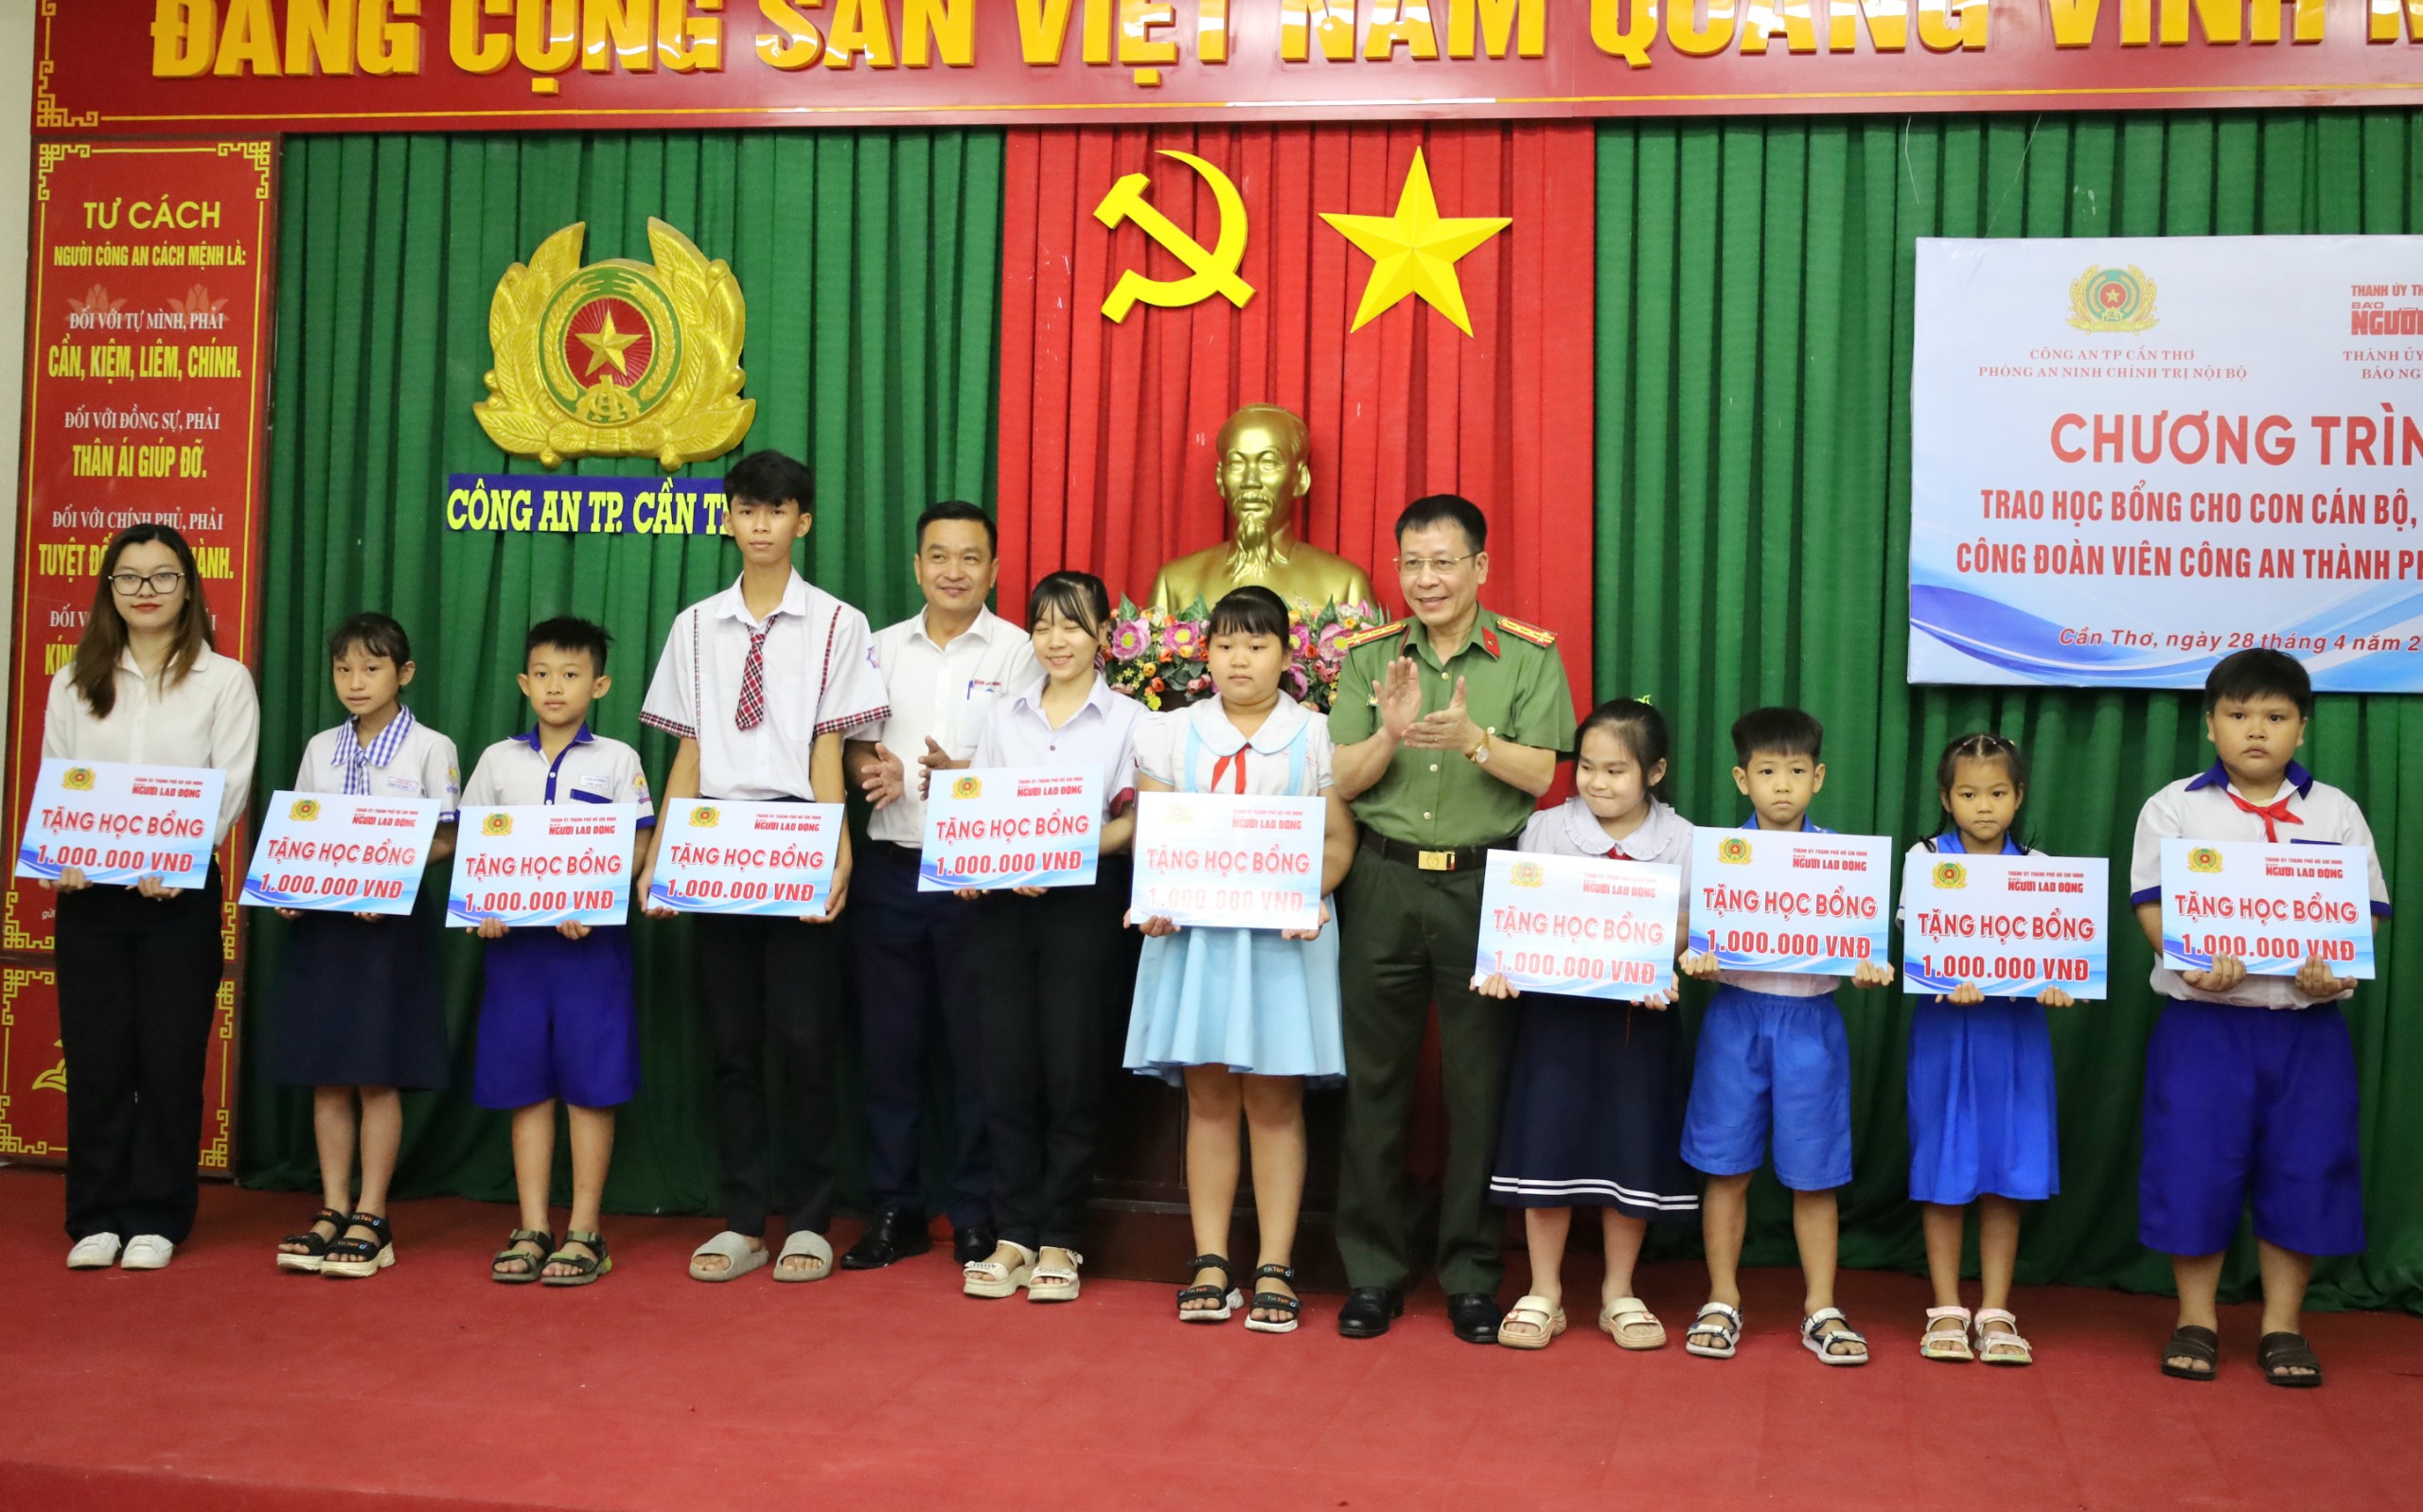 Đại tá Vũ Thành Thức – Phó Giám đốc Công an TP. Cần Thơ và ông Trần Công Tuấn - Phụ trách Văn phòng đại diện Báo Người lao động khu vực ĐBSCL trao tặng học bổng cho các em học sinh.